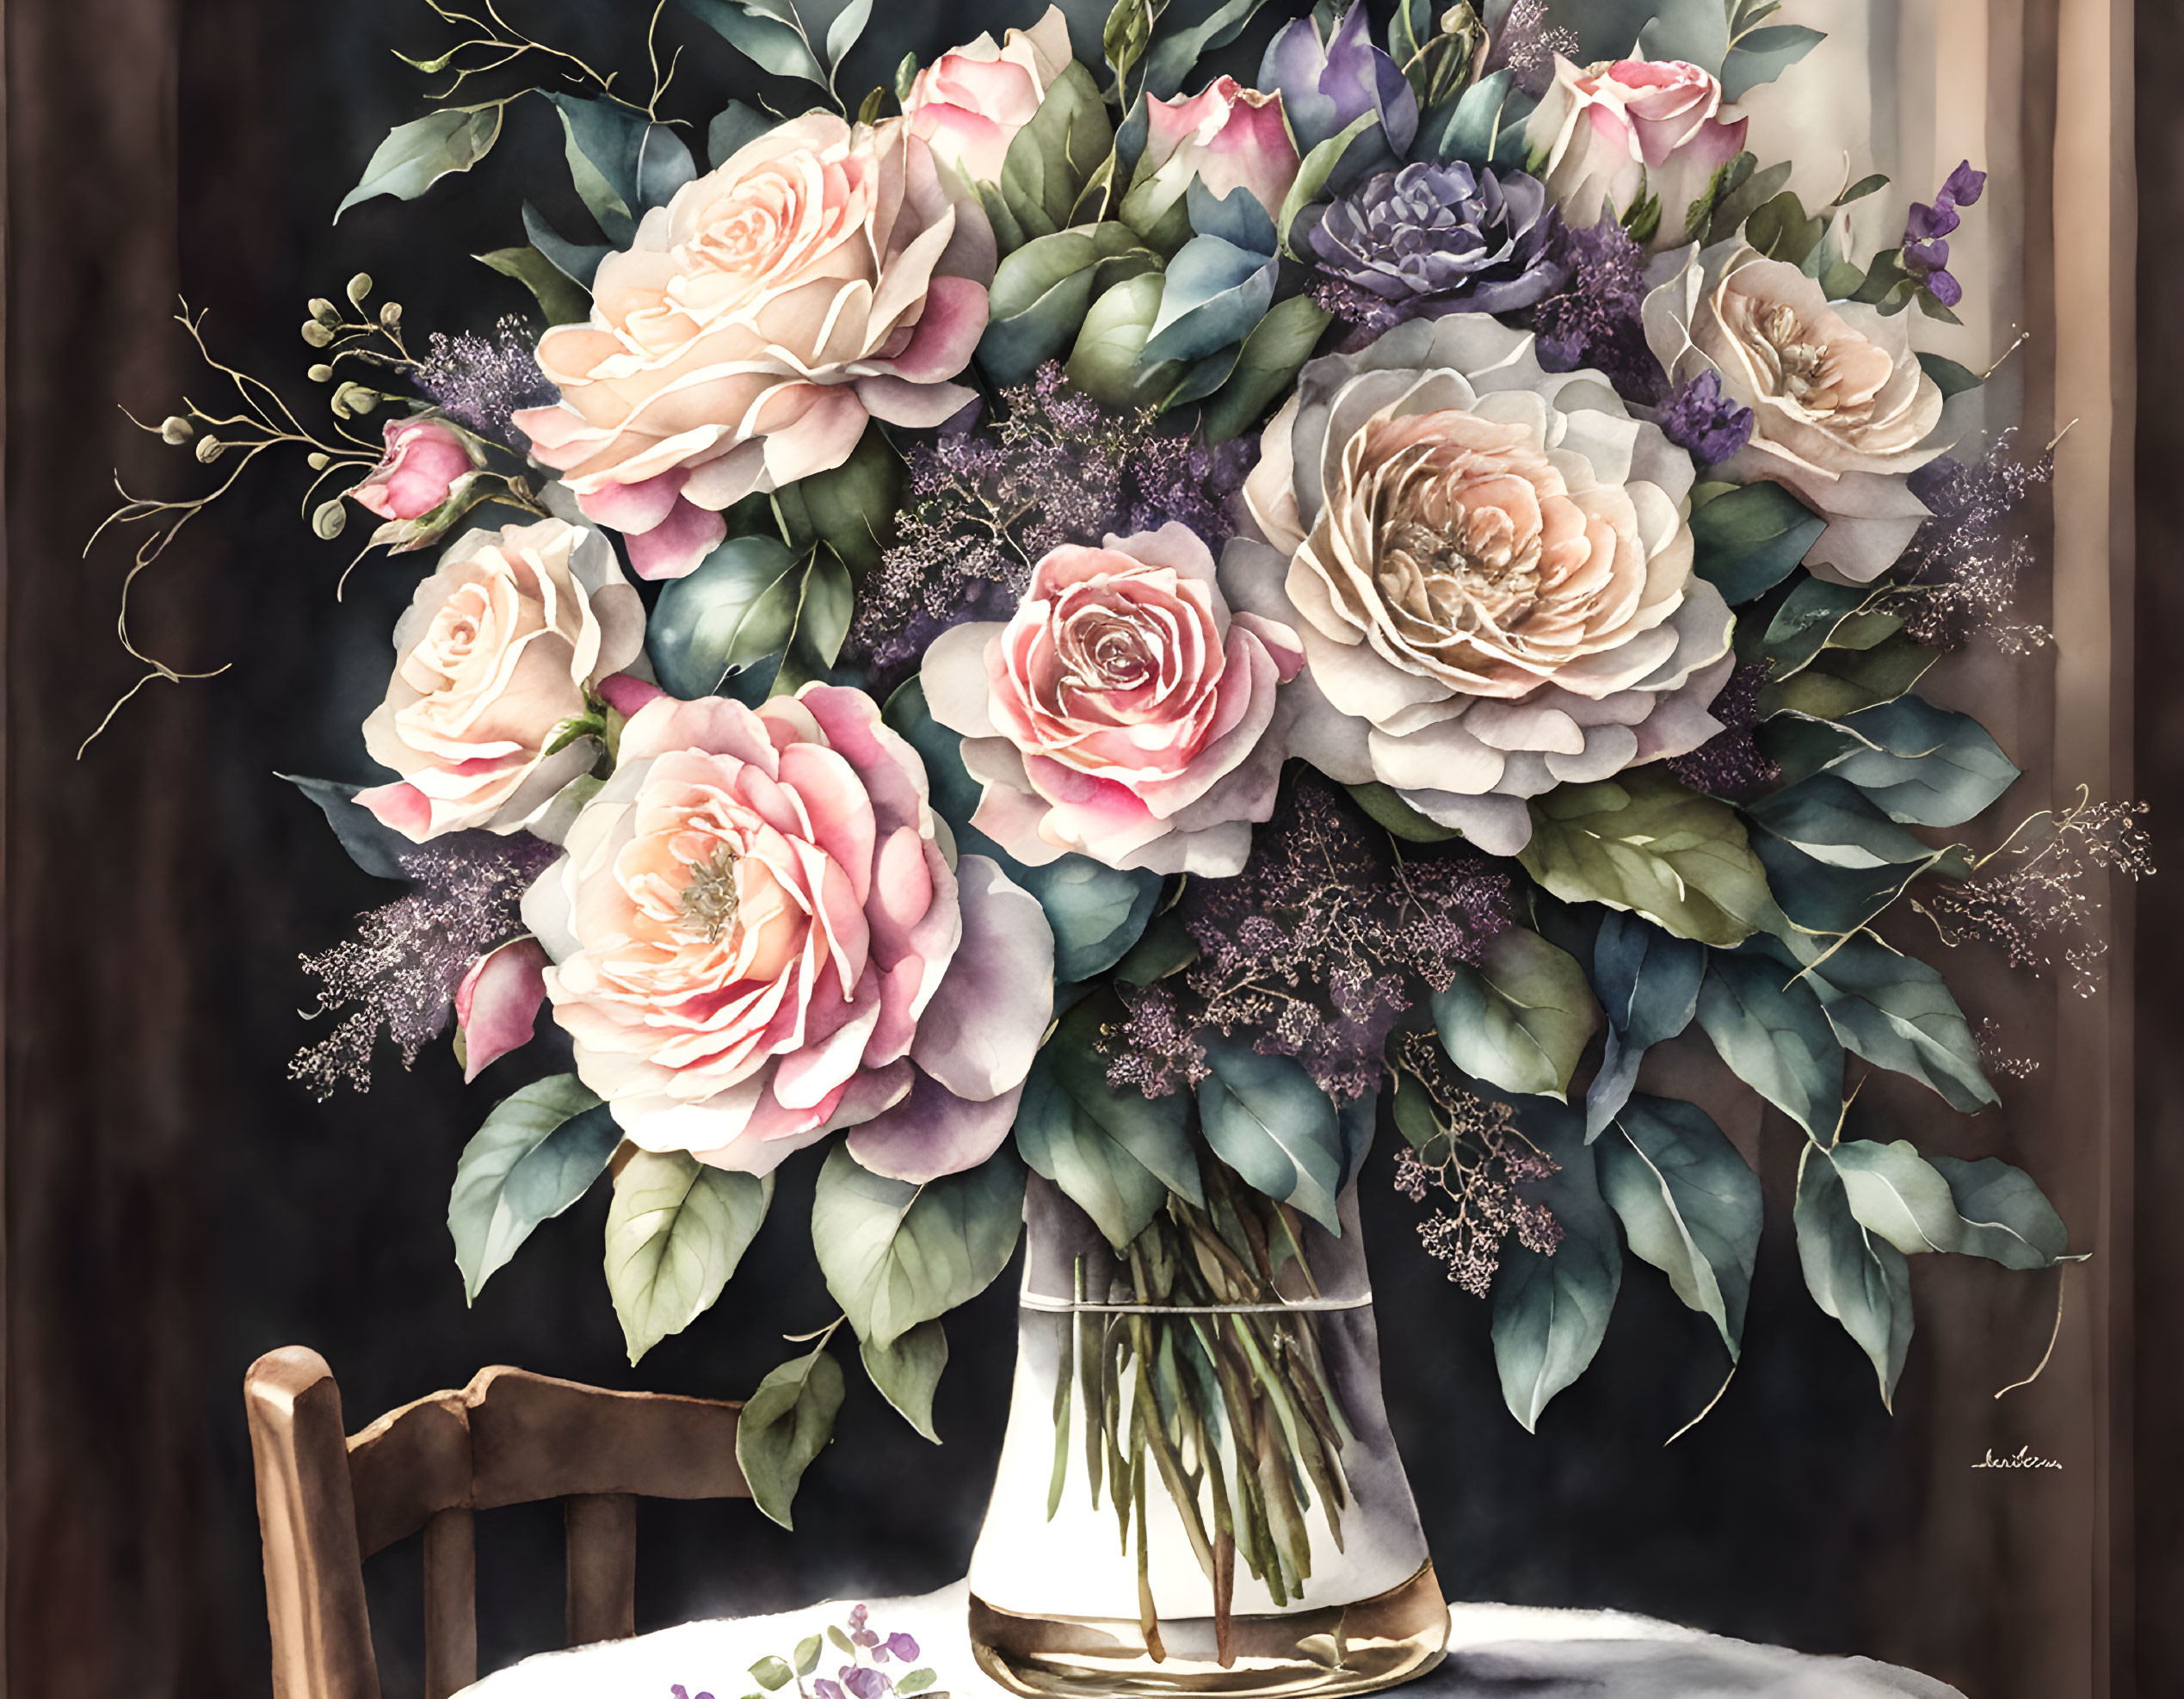 Charming Bouquet: A Watercolor-Photorealistic Blen